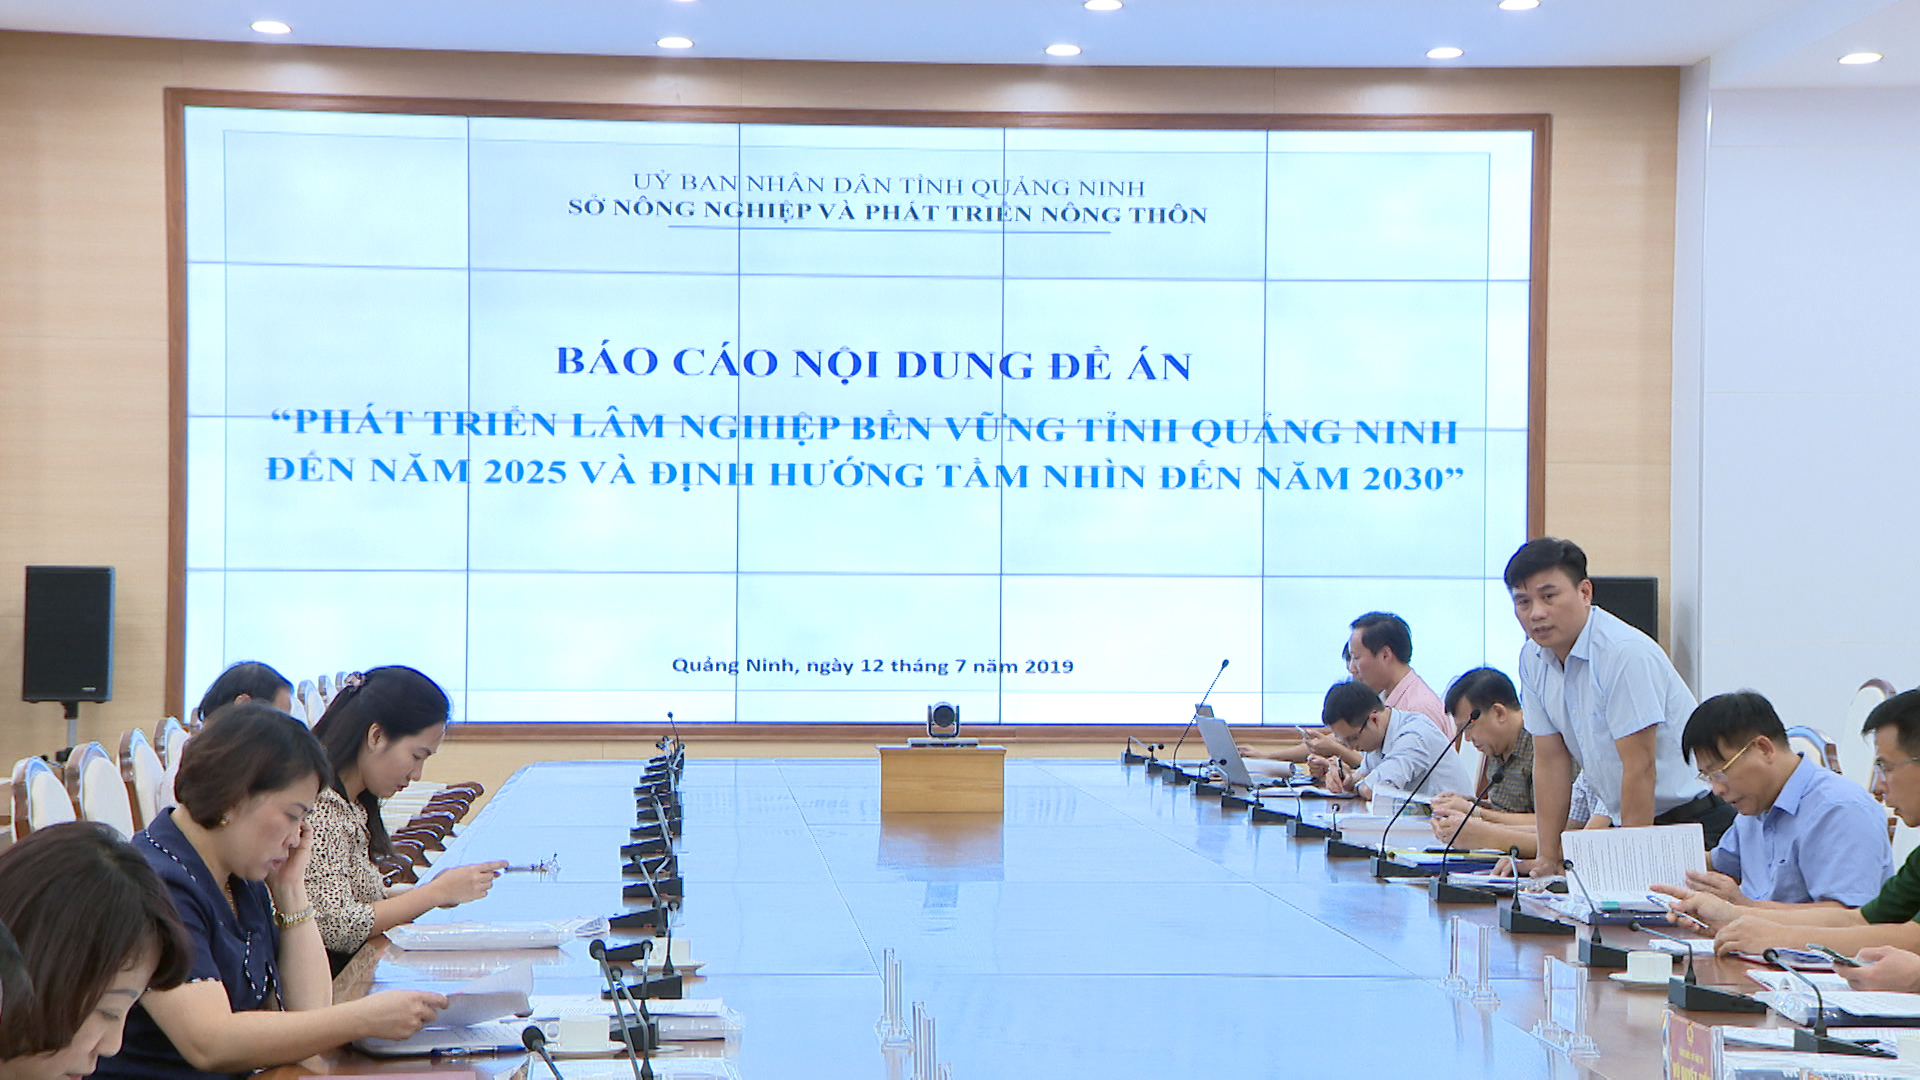 Đơn vị tư vấn báo cáo Đề án phát triển lâm nghiệp bền vững tỉnh Quảng Ninh.